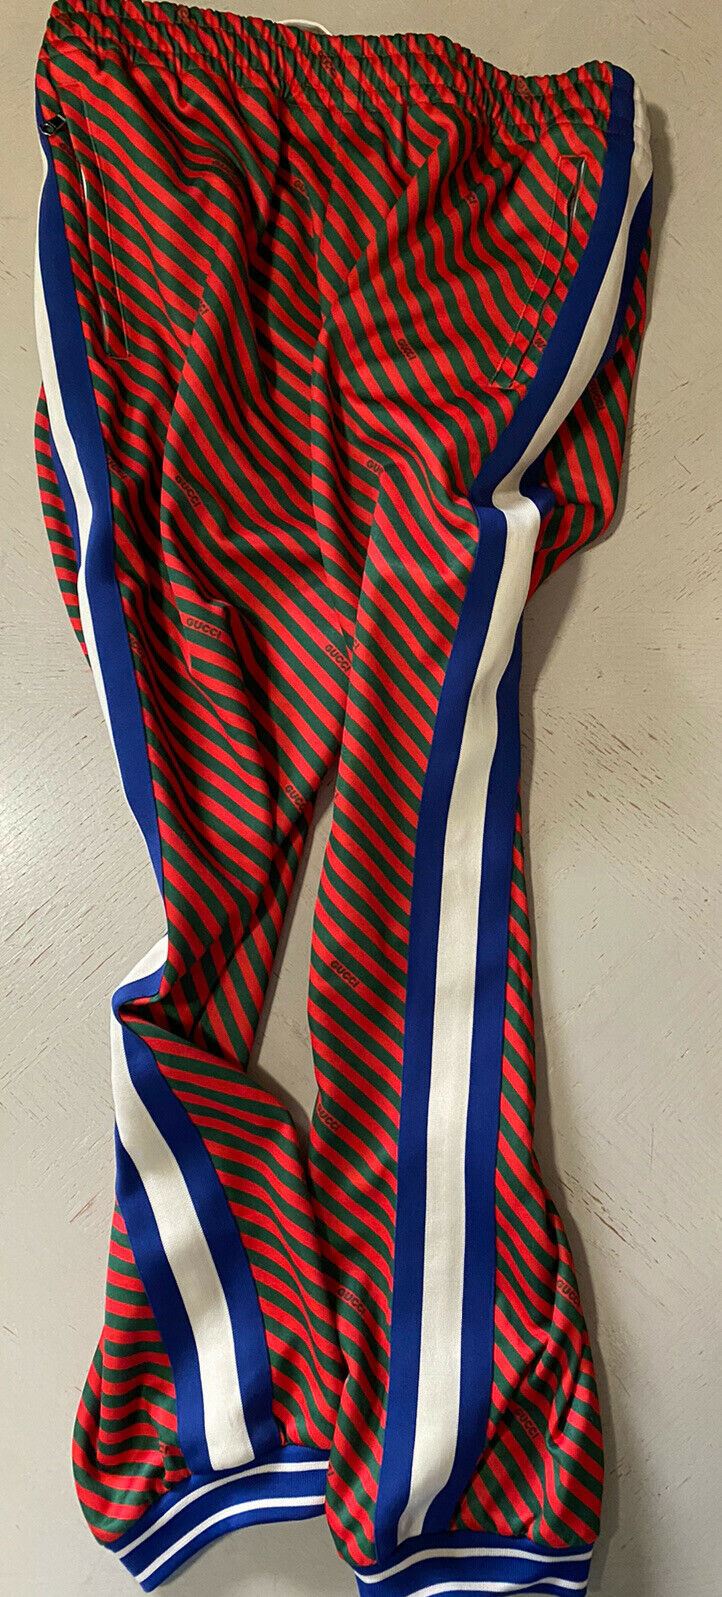 Новые мужские спортивные штаны Gucci синего/красного/зеленого цвета за 1500 долларов, размер XXL, Италия